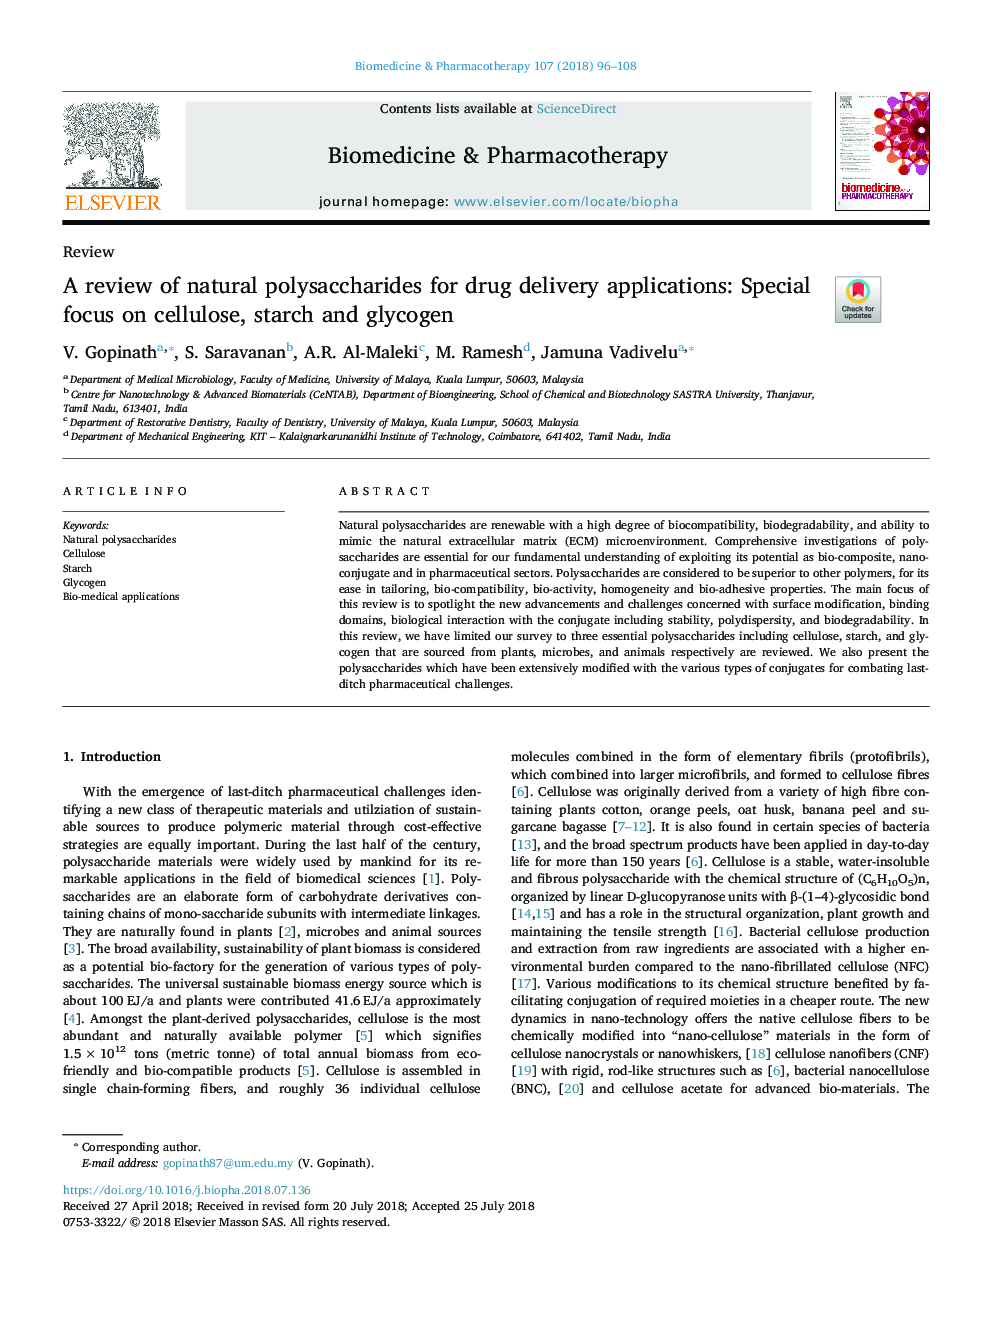 بررسی پلی ساکارید های طبیعی برای برنامه های تحویل دارویی: تمرکز ویژه بر سلولز، نشاسته و گلیکوژن